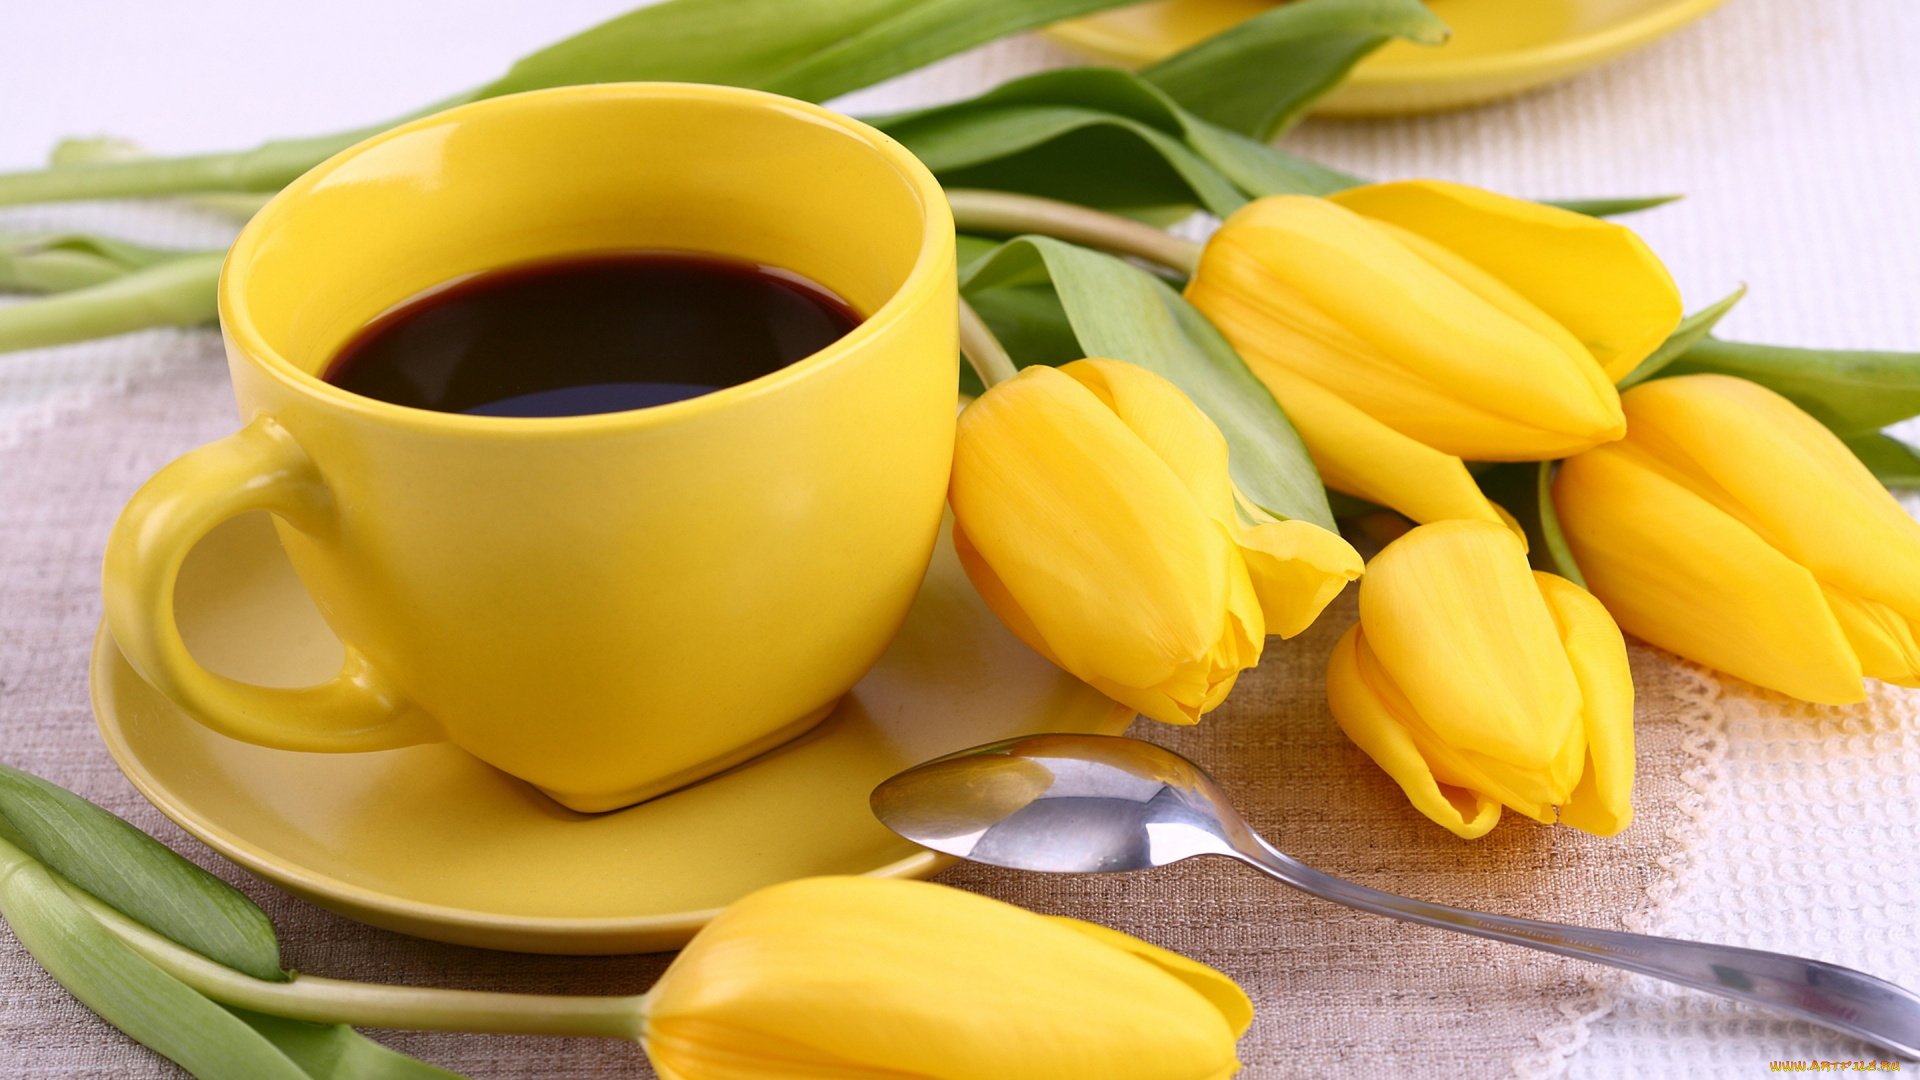 еда, кофе, , кофейные, зёрна, чашка, цветы, тюльпаны, yellow, flowers, tulips, coffee, cup, breakfast